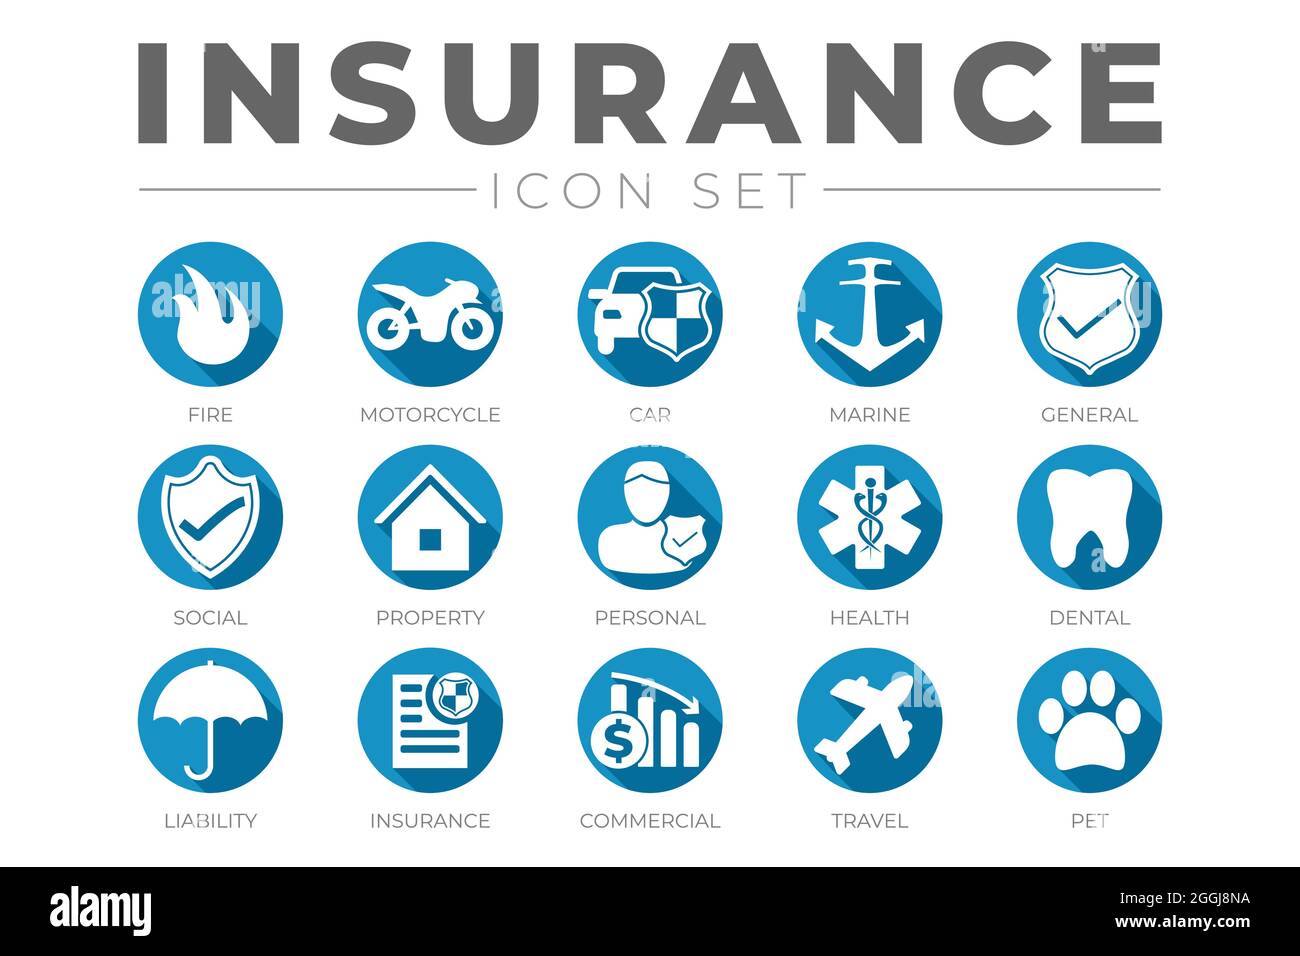 Runde Flat Insurance Icon Set mit Auto, Eigentum, Feuer, Leben, Haustier, Reisen, Zahnmedizin, Gesundheit, Marine, Haftpflichtversicherung Icons Stock Vektor